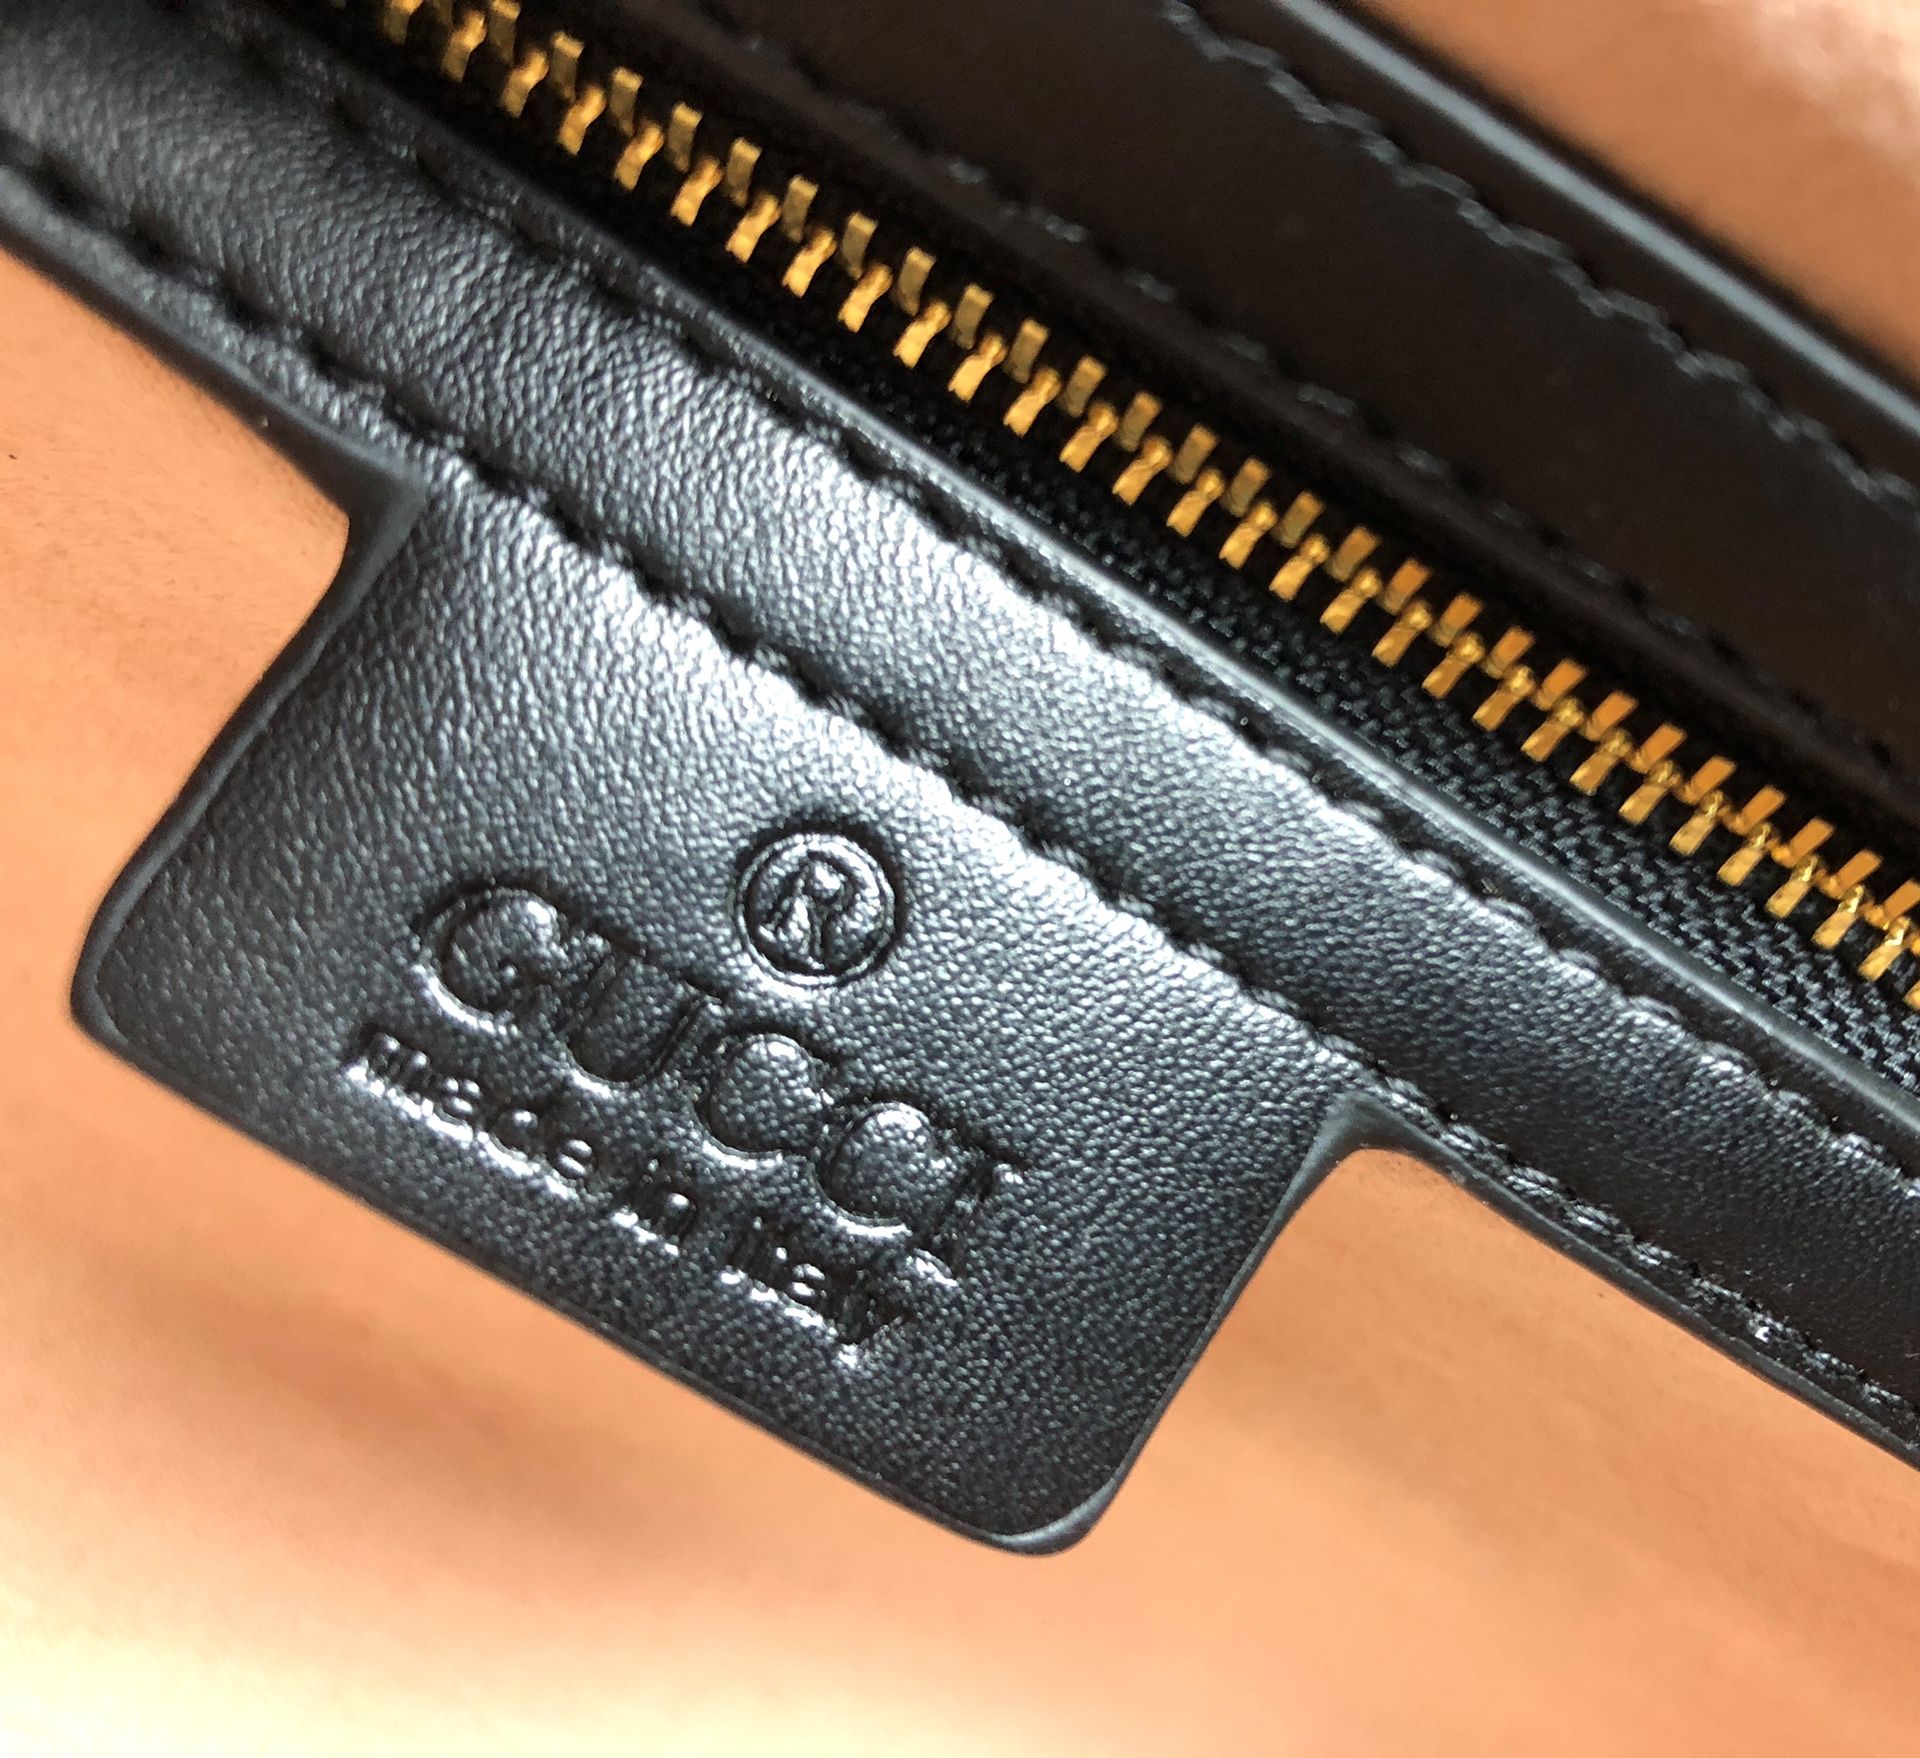 Gucci belt bag 💯💯💯 original italy - Ts Original boutique